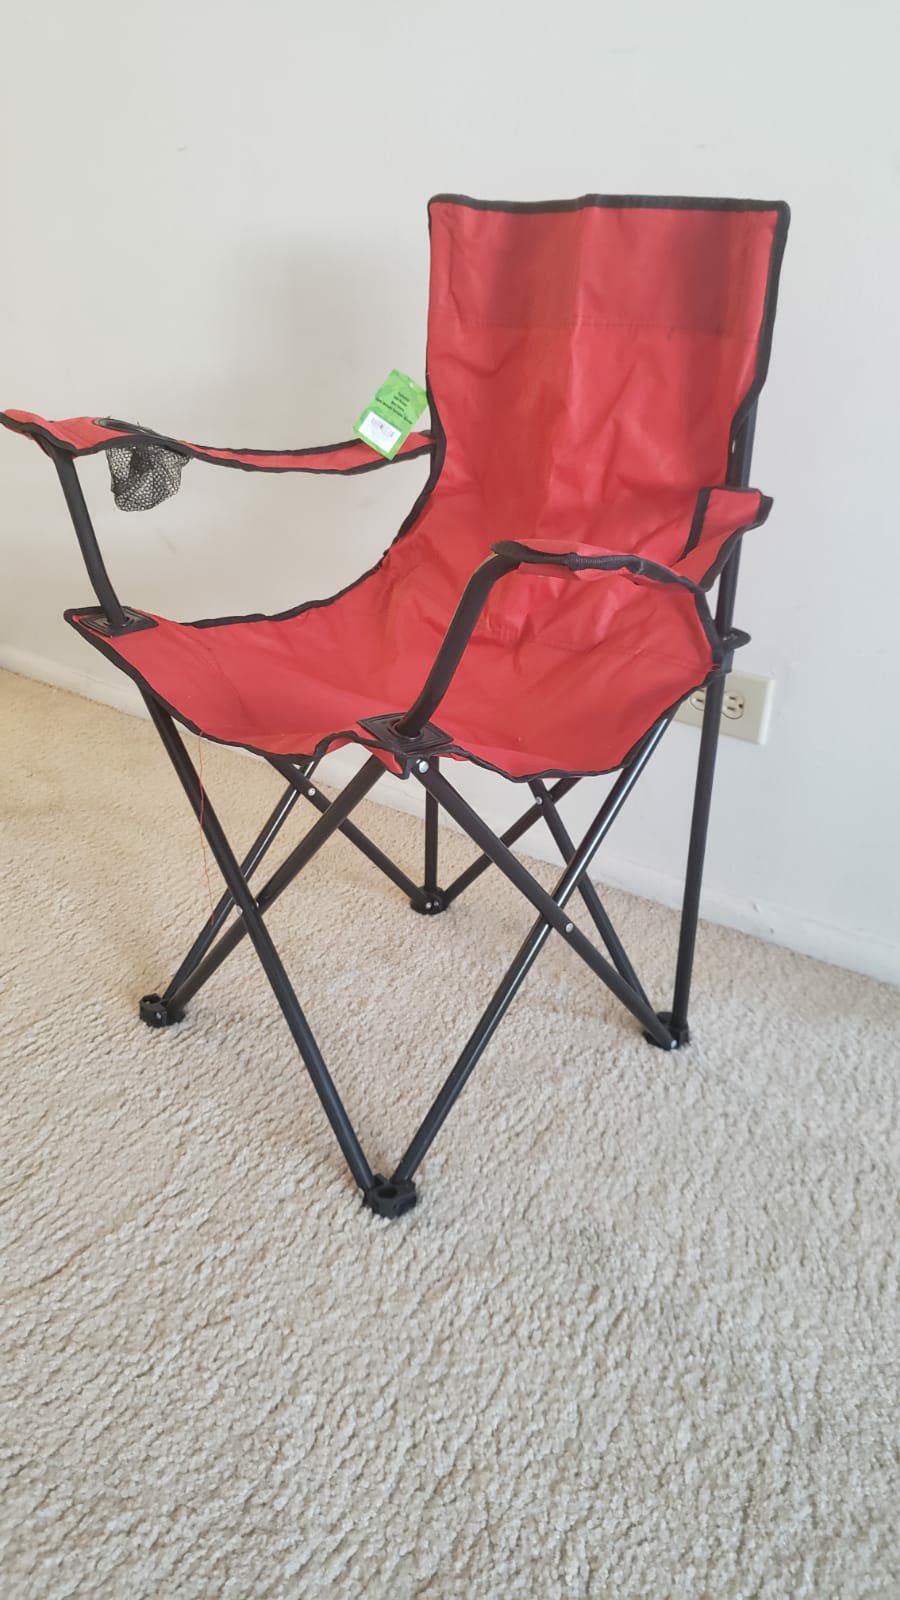 Beach/Camping chair